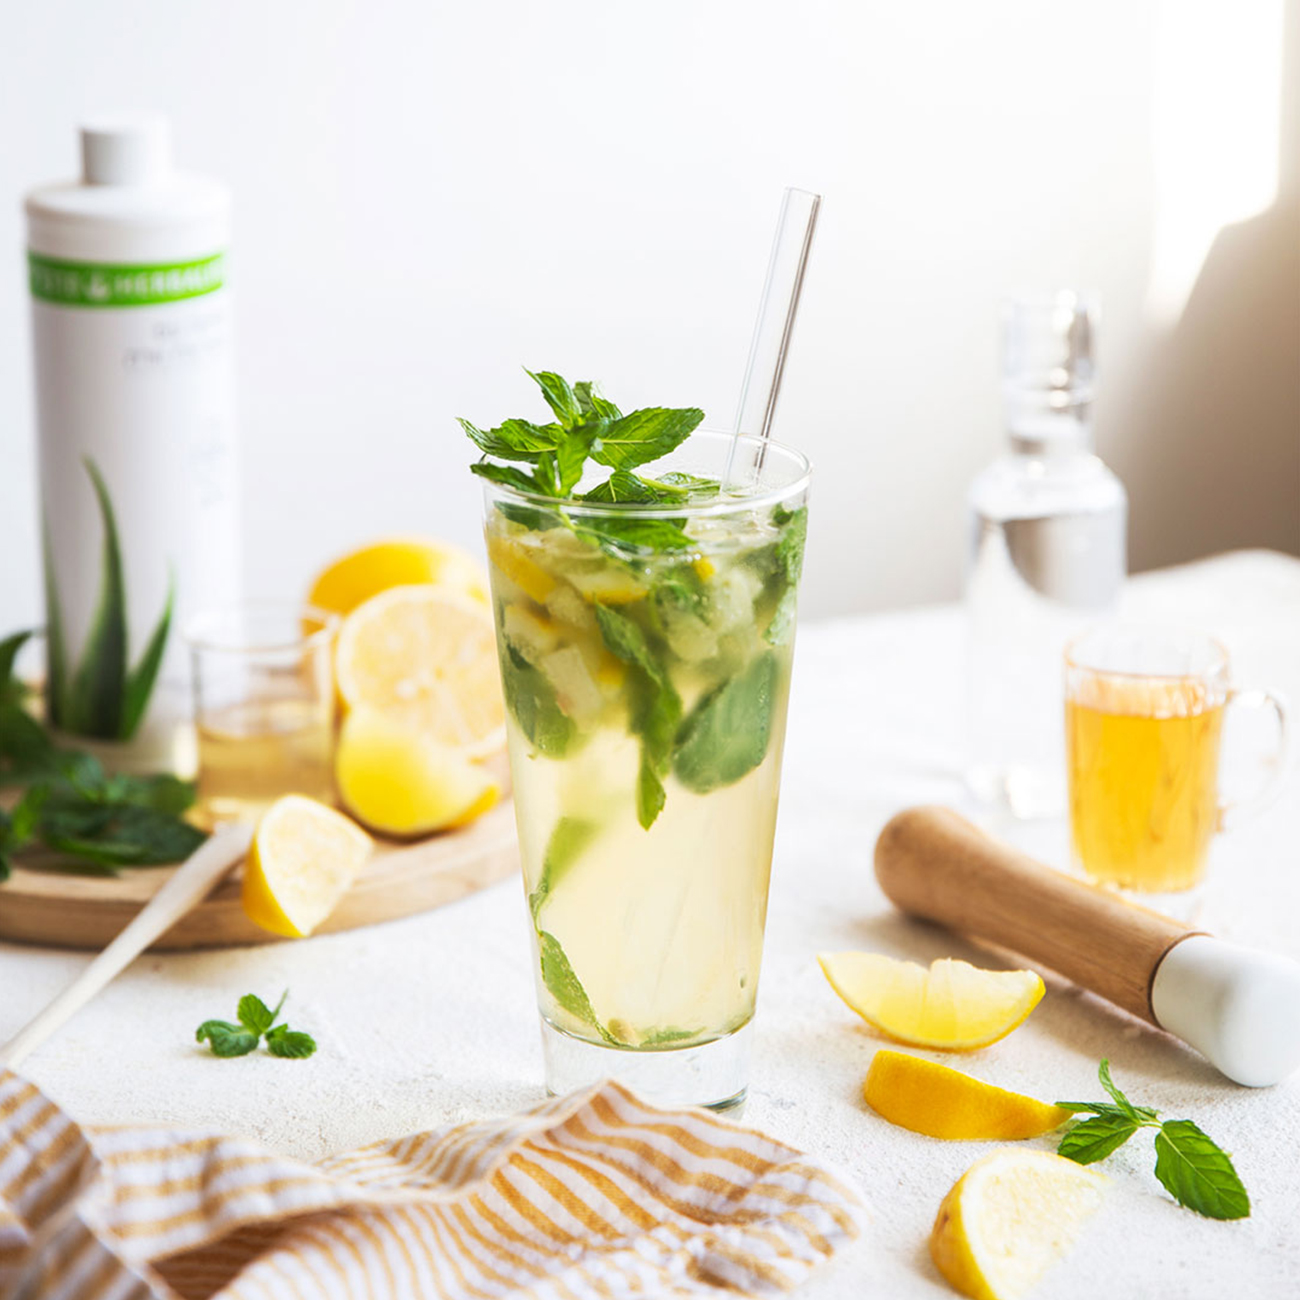 herbalife nutrition osvježavajuća čaša napitka Biljnog koncentrata aloje s dodatkom limuna i metvice 